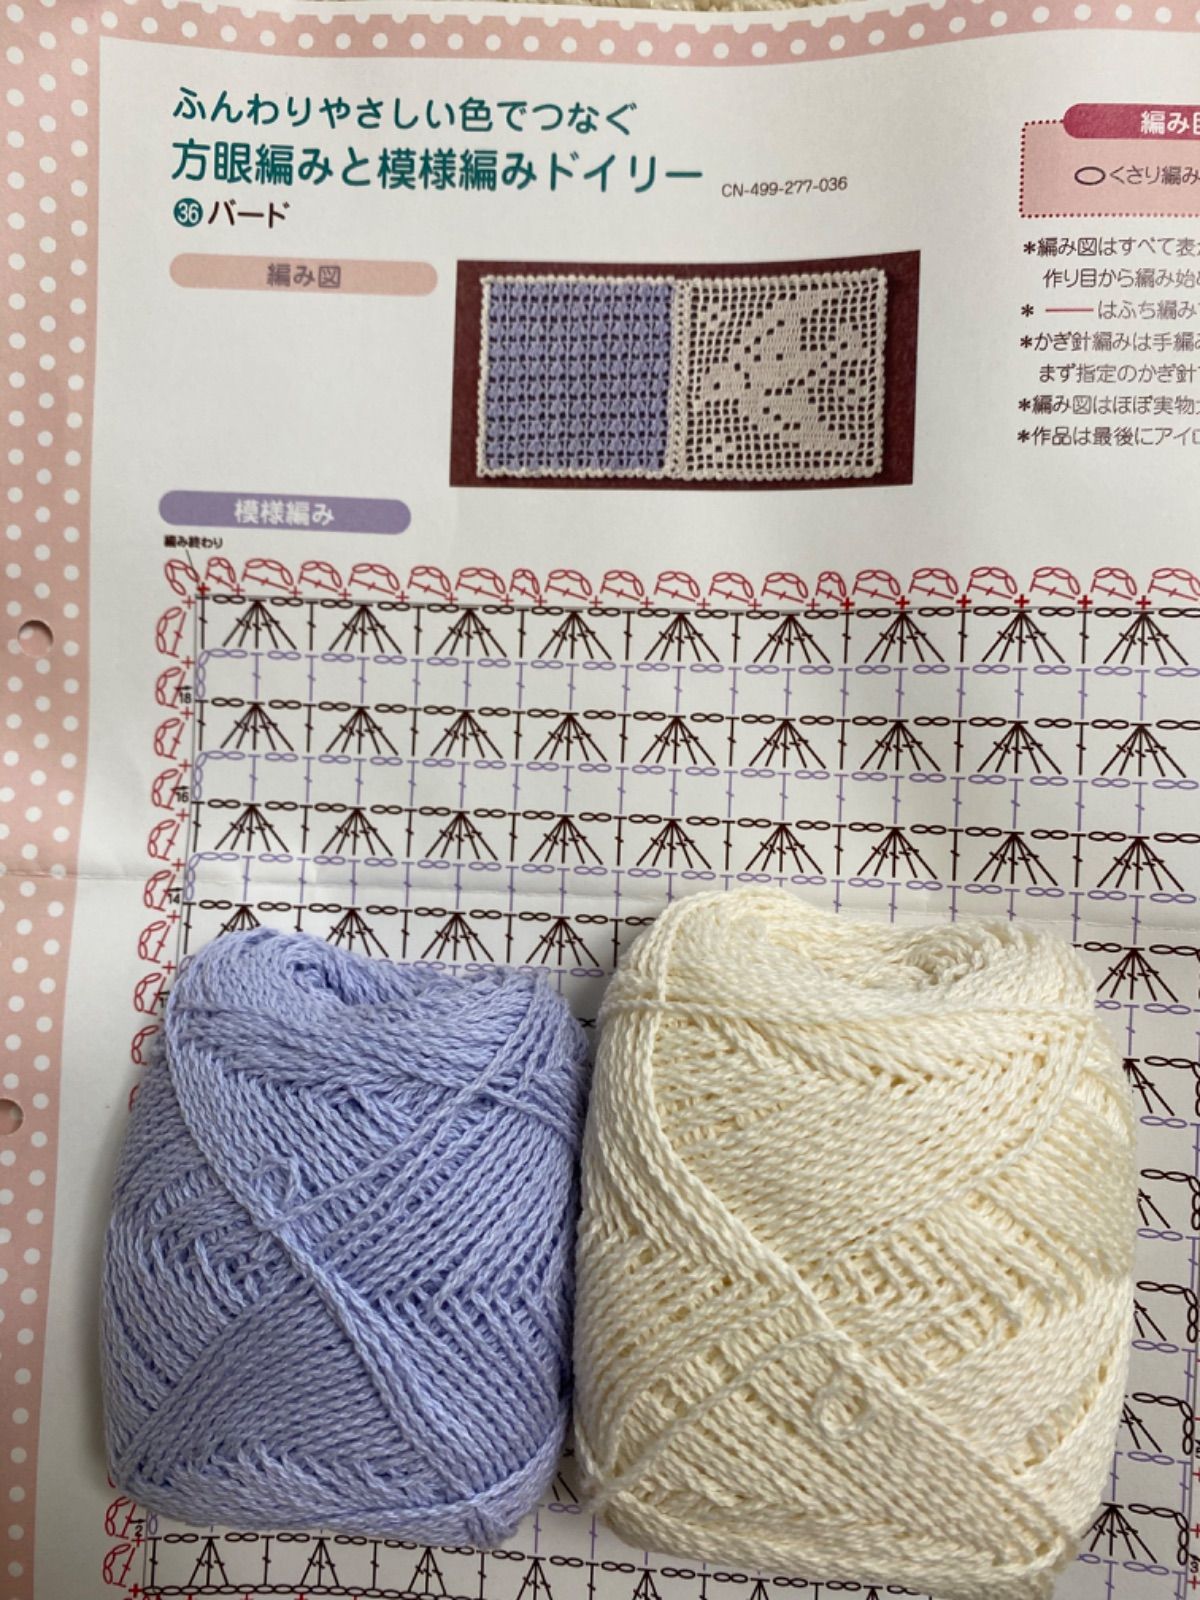 ウサギチャン様専用 方眼編みと模様編みドイリー | nate-hospital.com